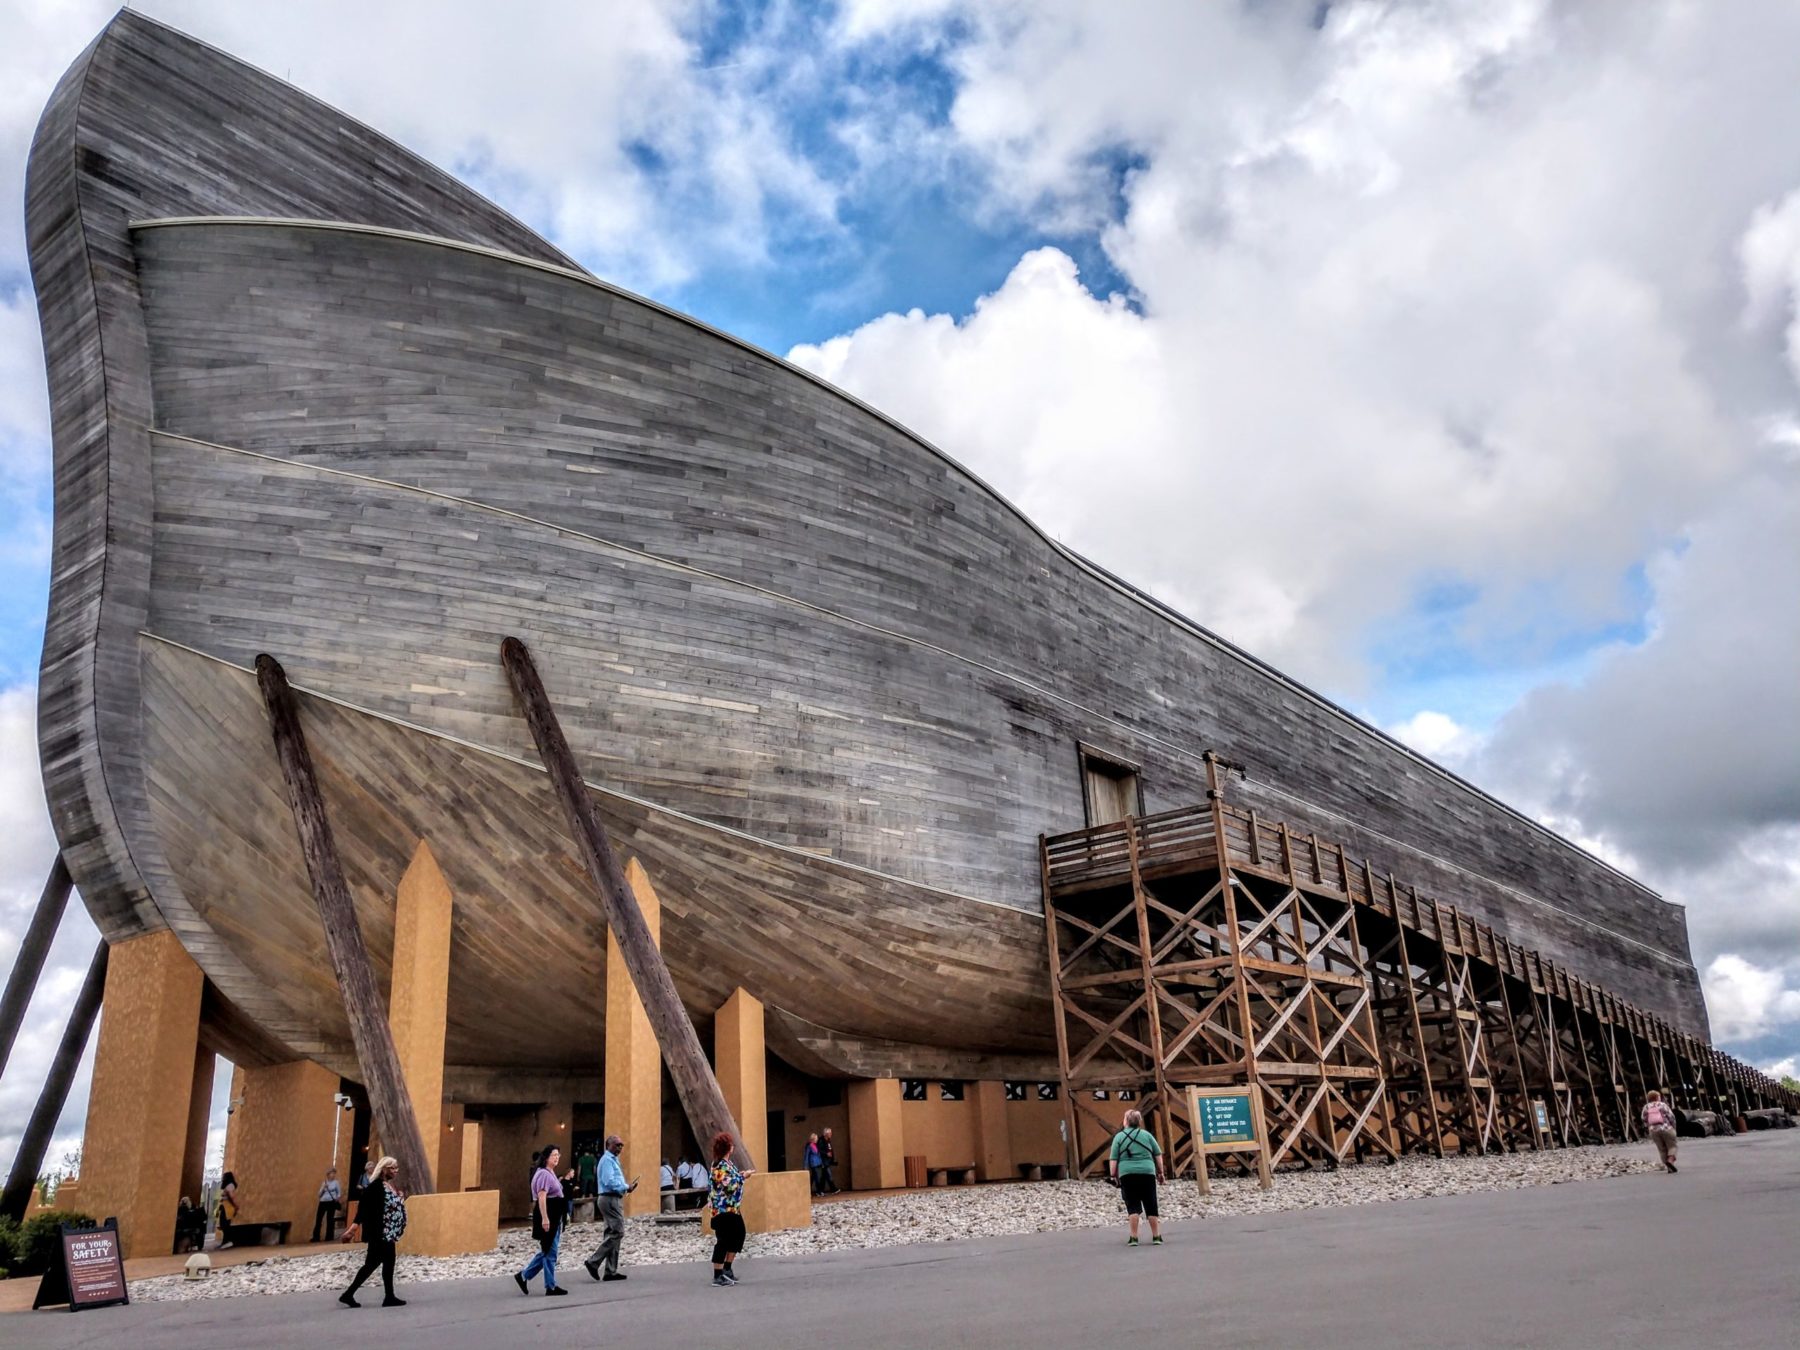 Photo de la réplique de l'arche de Noé. Le bâtiment, tout en bois, est immense. Les quelques touristes présents sur l'image ont l'air très petits en comparaison.